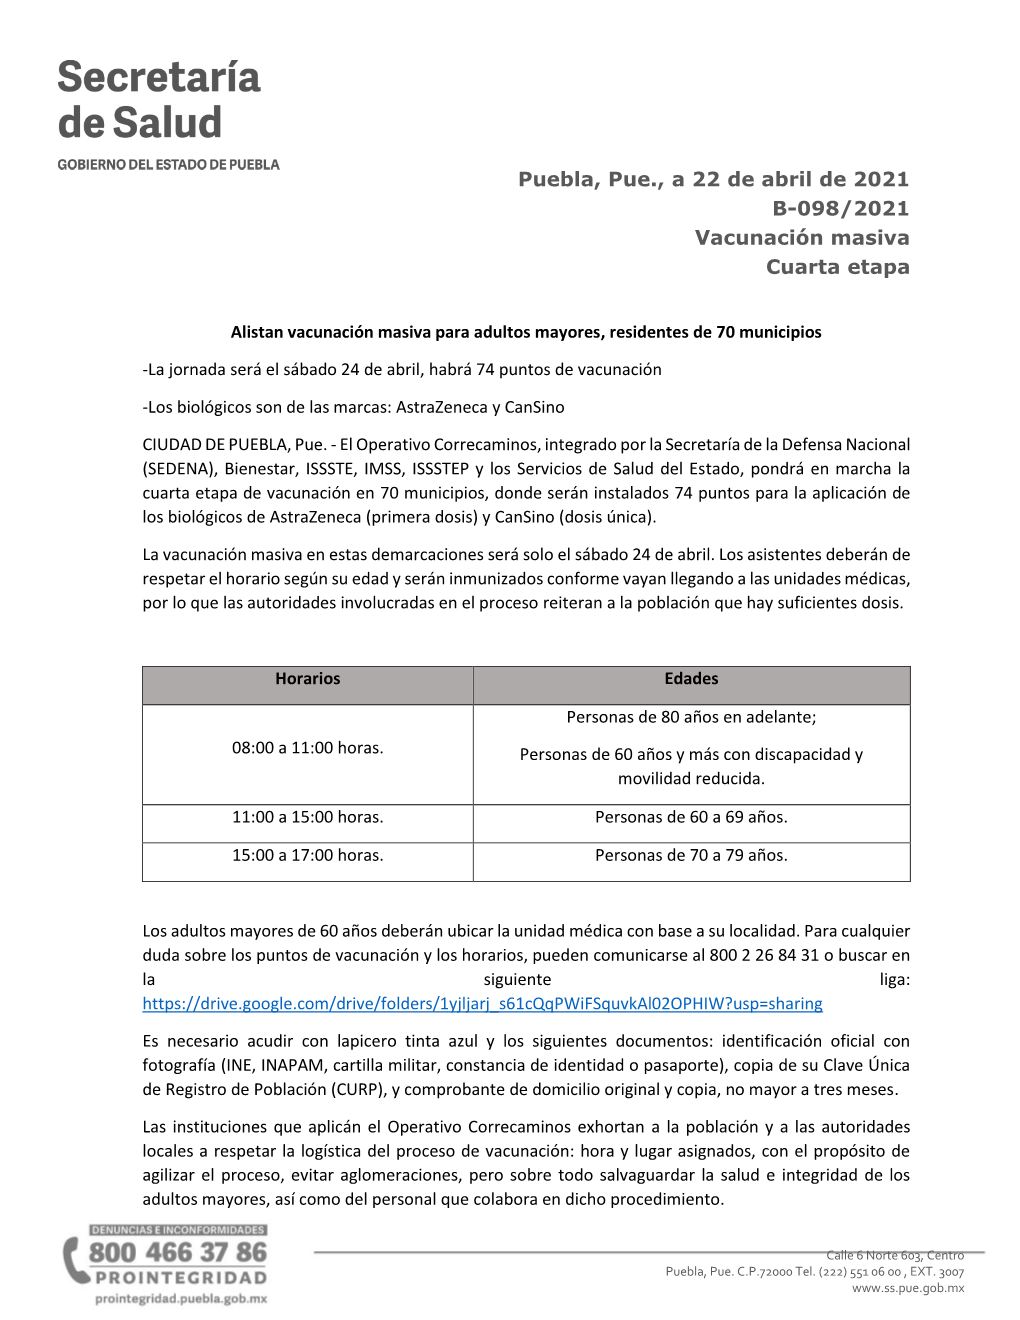 Puebla, Pue., a 22 De Abril De 2021 B-098/2021 Vacunación Masiva Cuarta Etapa